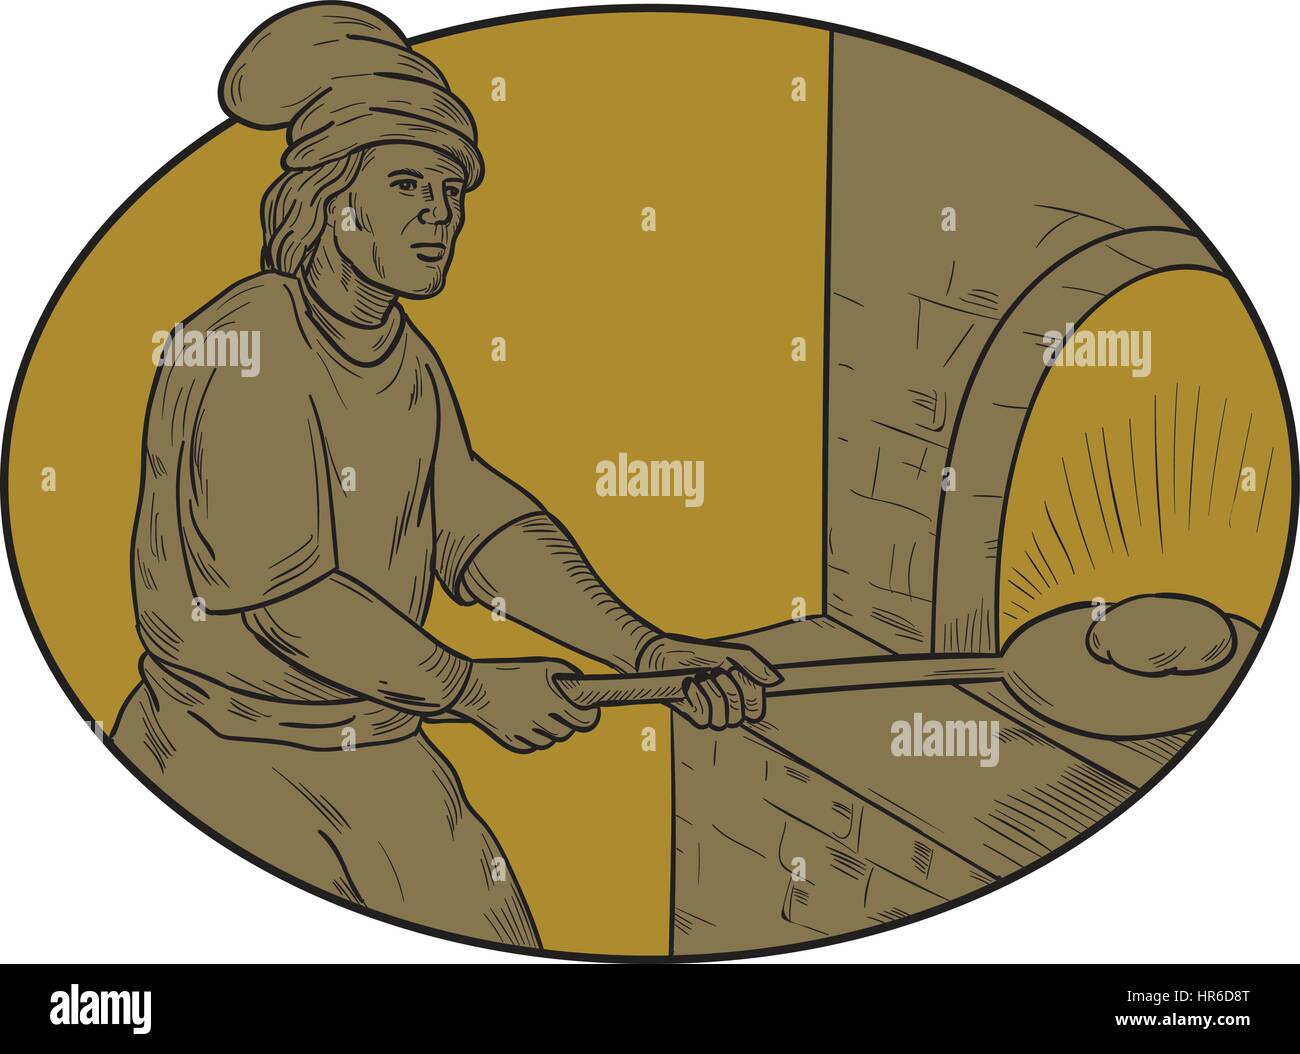 Croquis dessin illustration style de chef cuisinier d'un boulanger à l'époque médiévale avec peel mettre la pâte dans le four à bois situé à l'intérieur de la forme ovale. Illustration de Vecteur